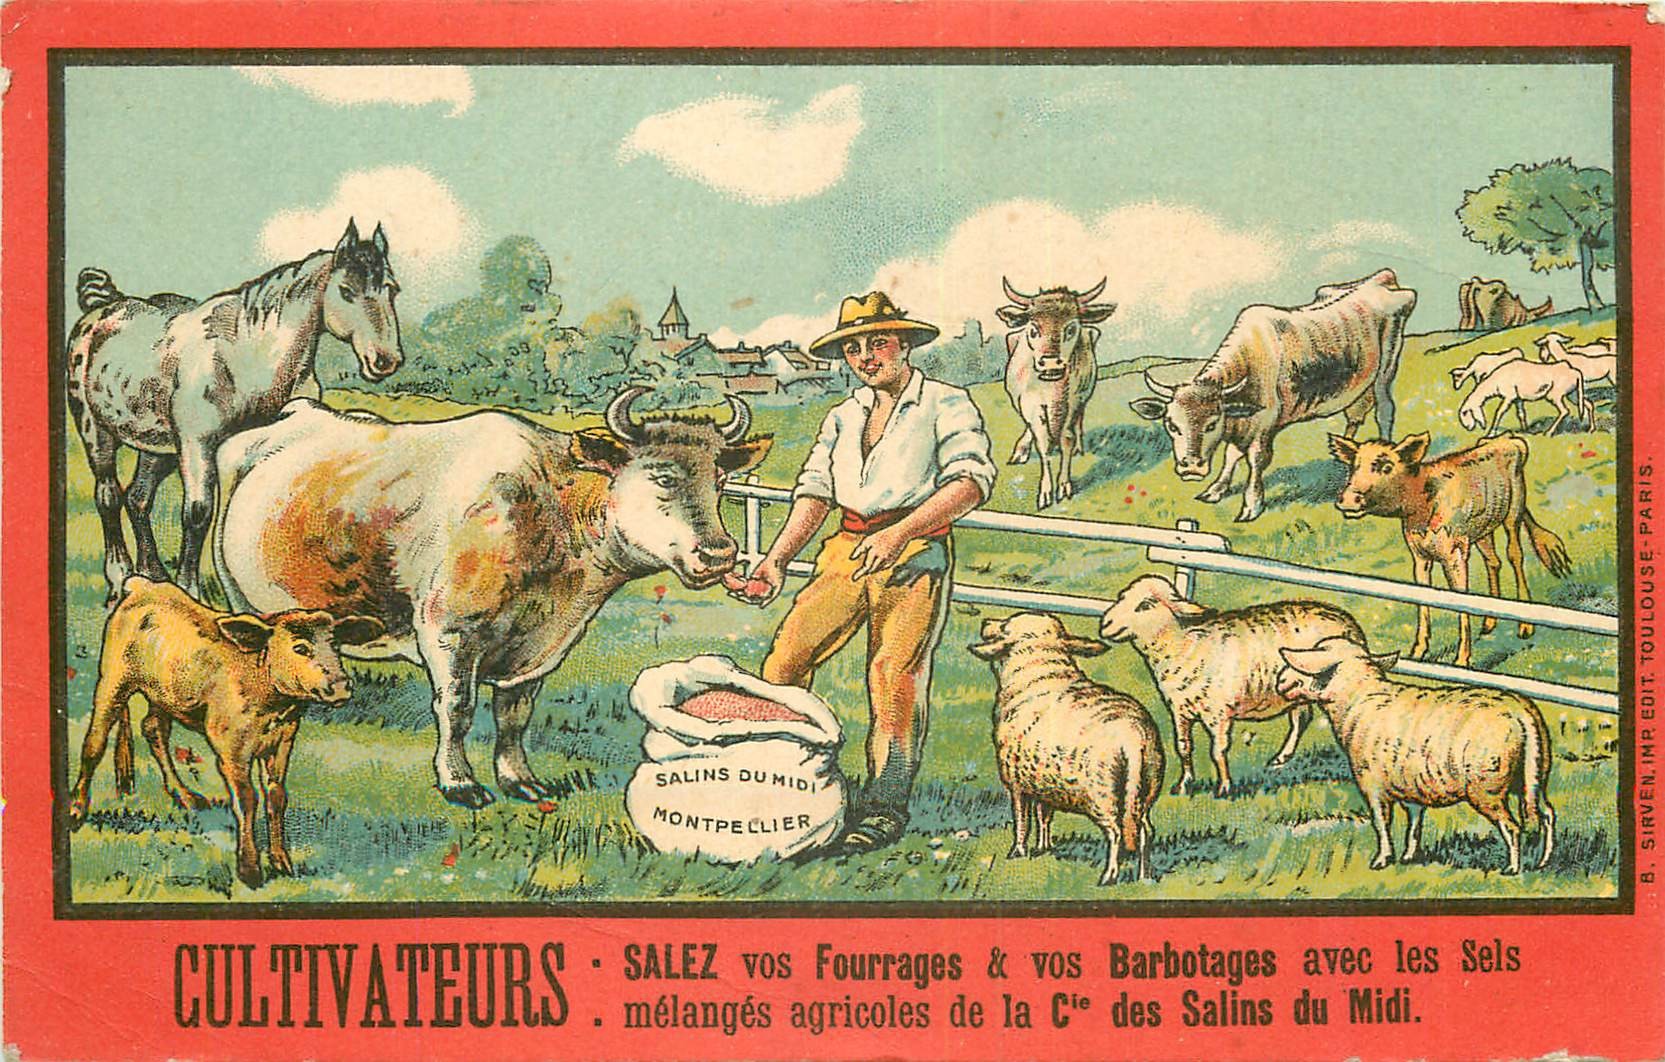 WW Publicité des Salins du Midi à Montpellier pour les Agriculteurs Fourrages et Barbotages